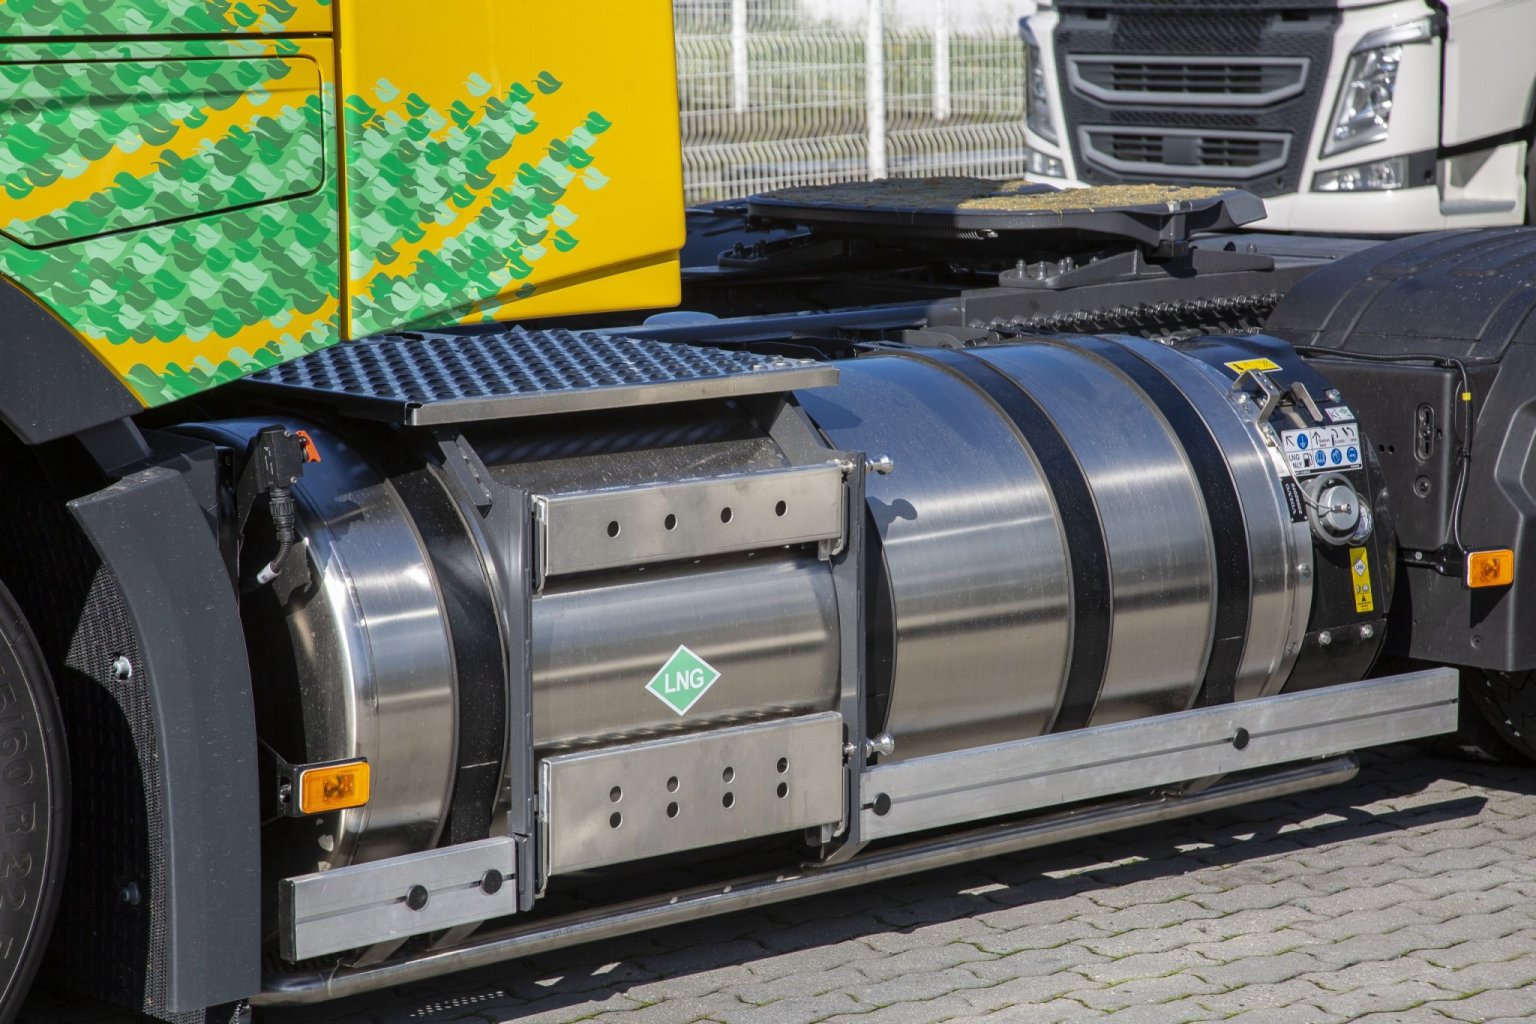 Uvedení deseti nových kamionù na LNG do provozu je souèástí programu skupiny Deutsche Post DHL pro ochranu životního prostøedí Go Green (ilustraèní snímek).